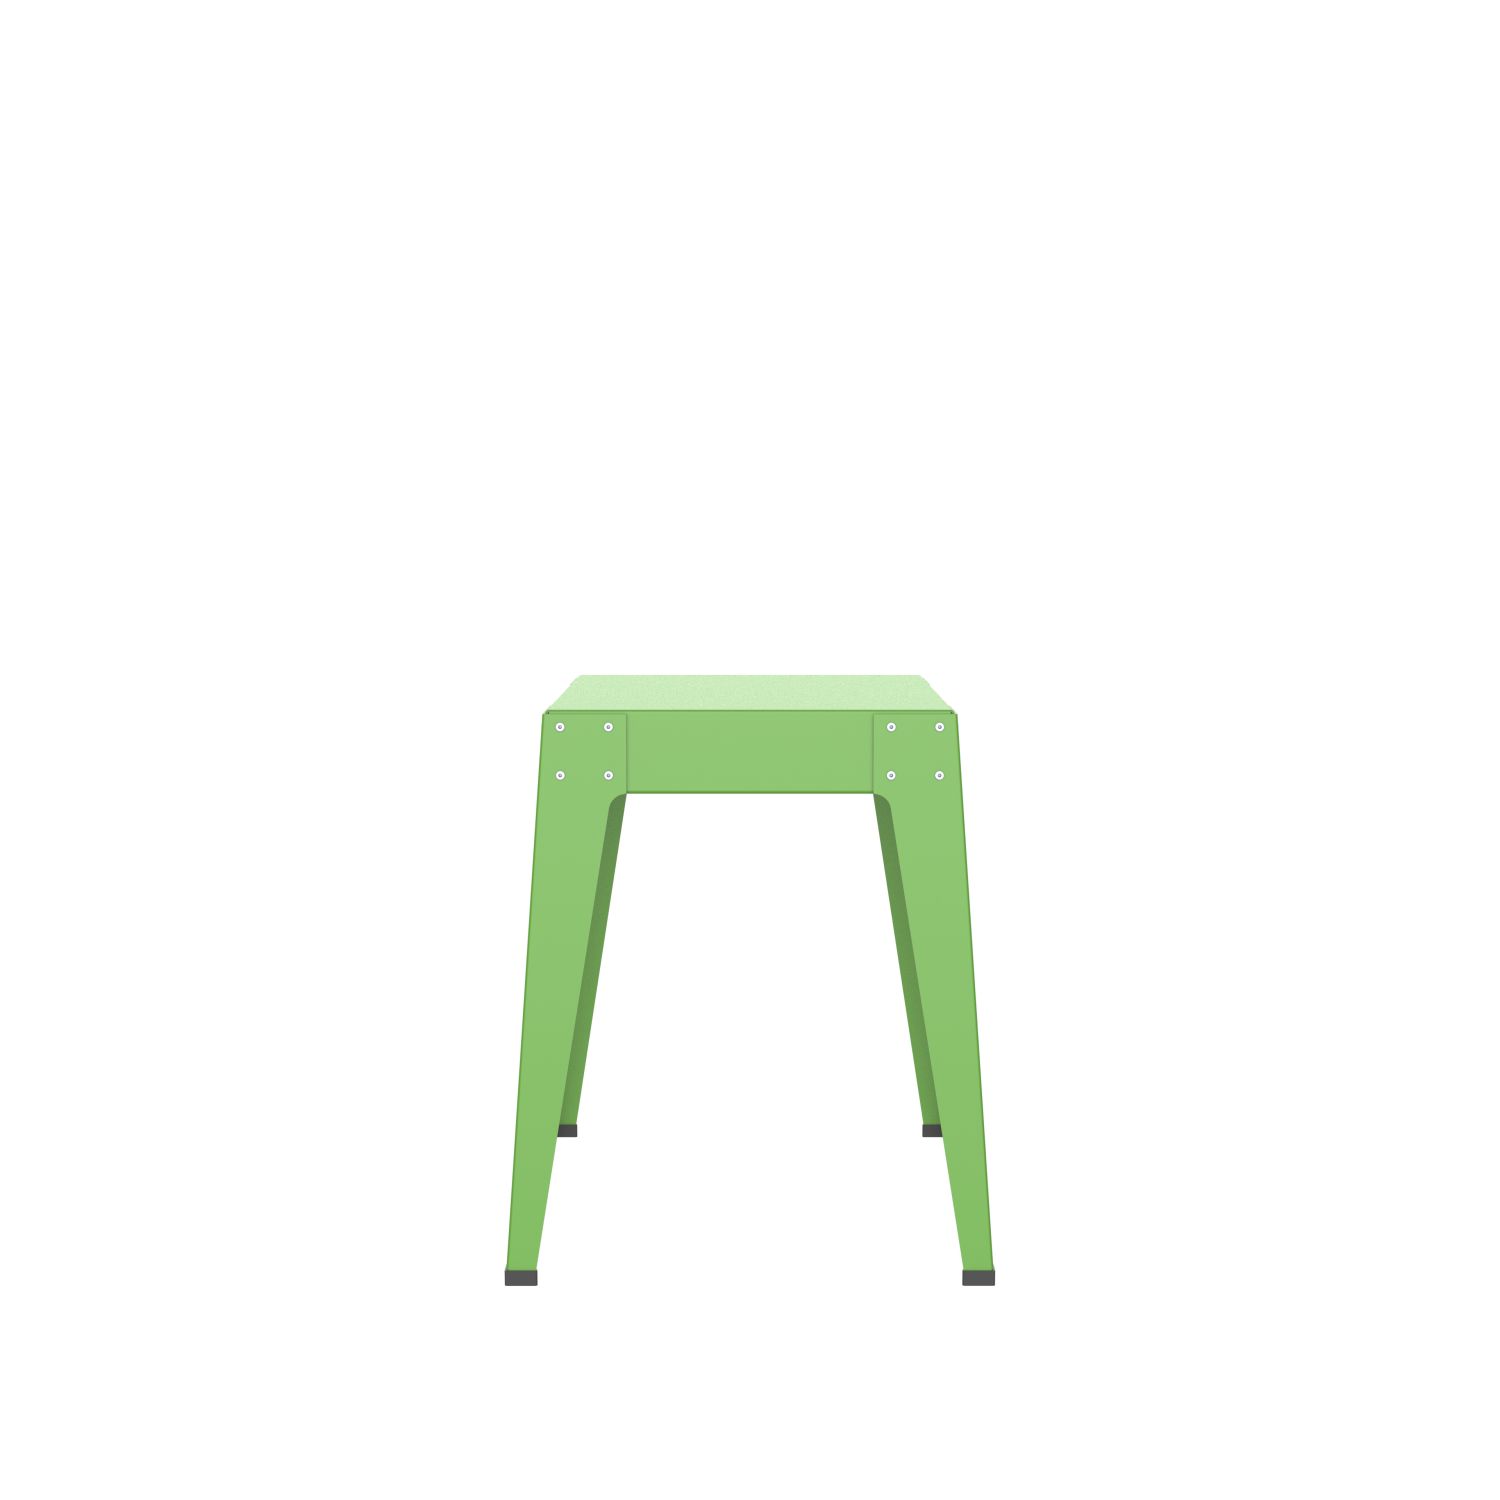 lensvelt piet hein eek aluminium series stool yellow green ral 6018 soft leg ends